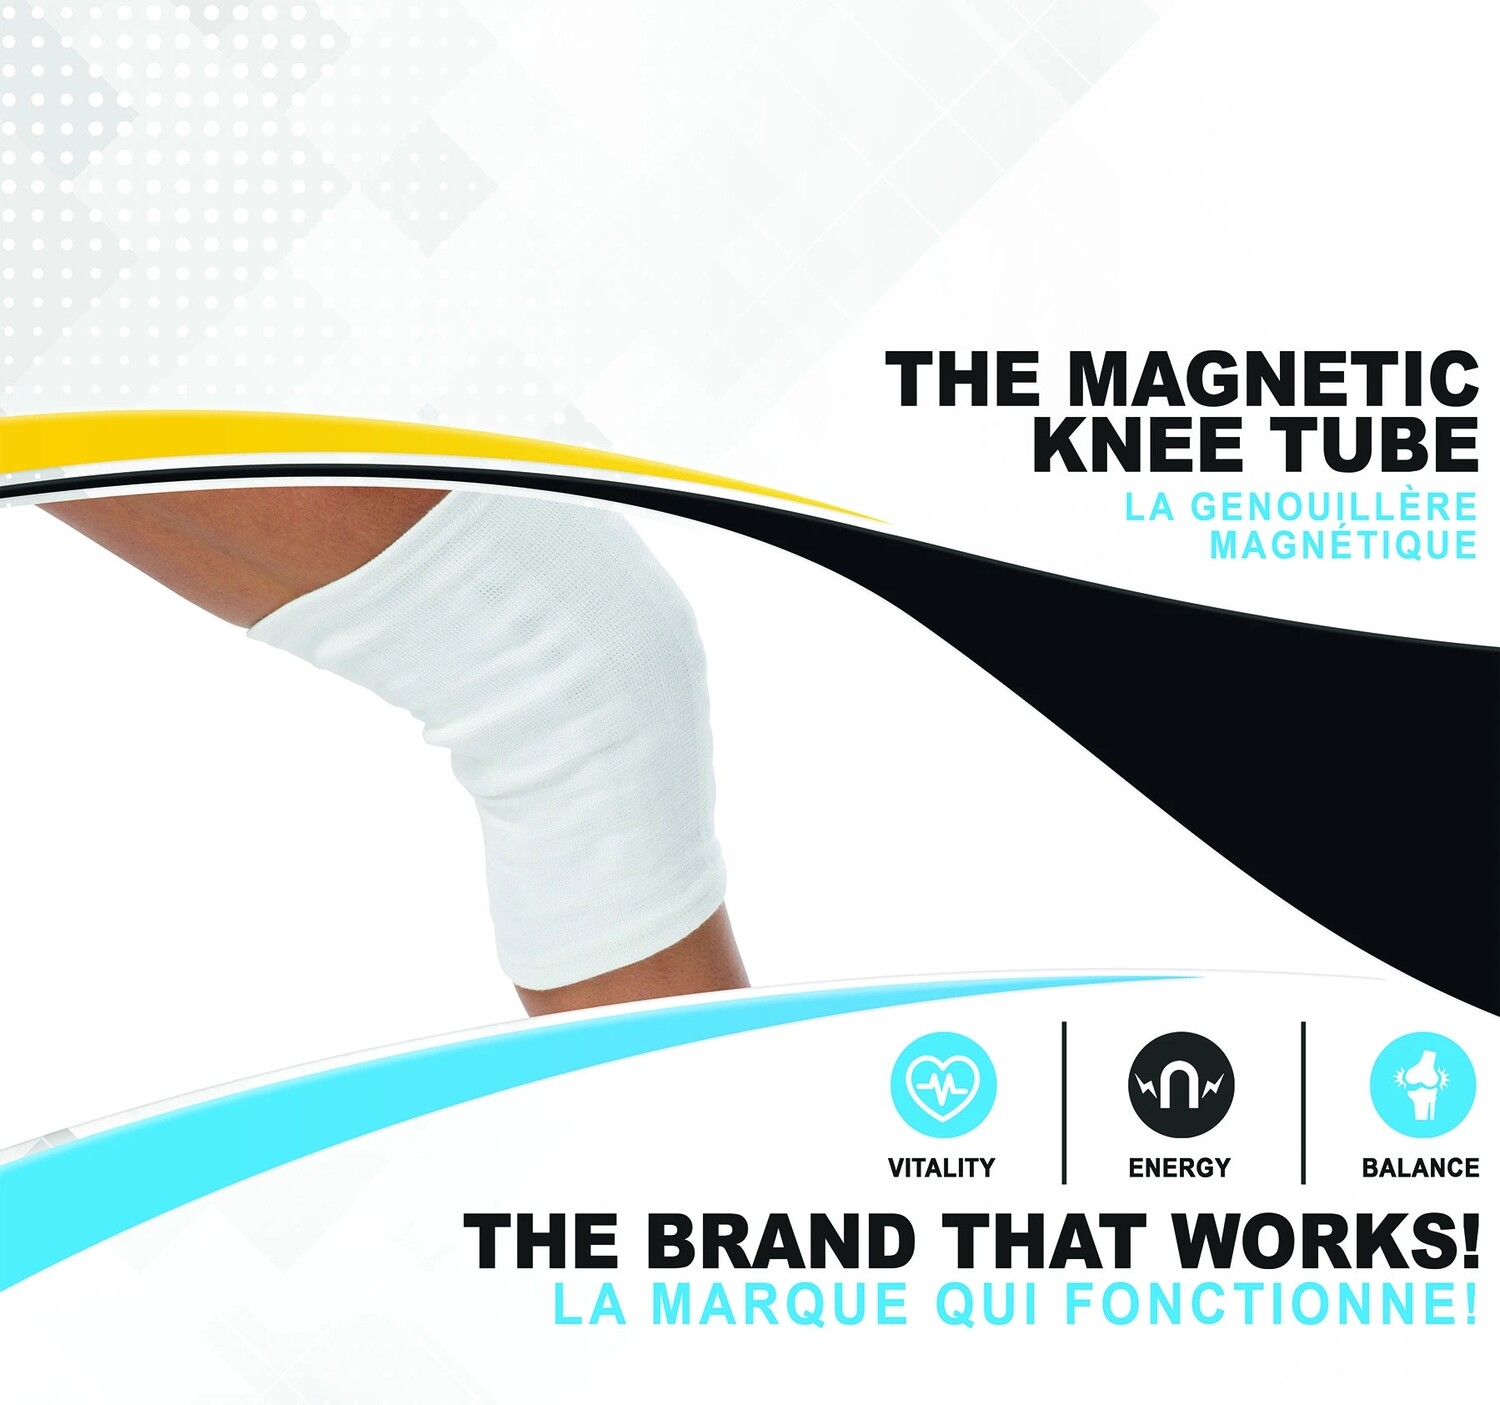 Serenity - Magnetic Knee Tube